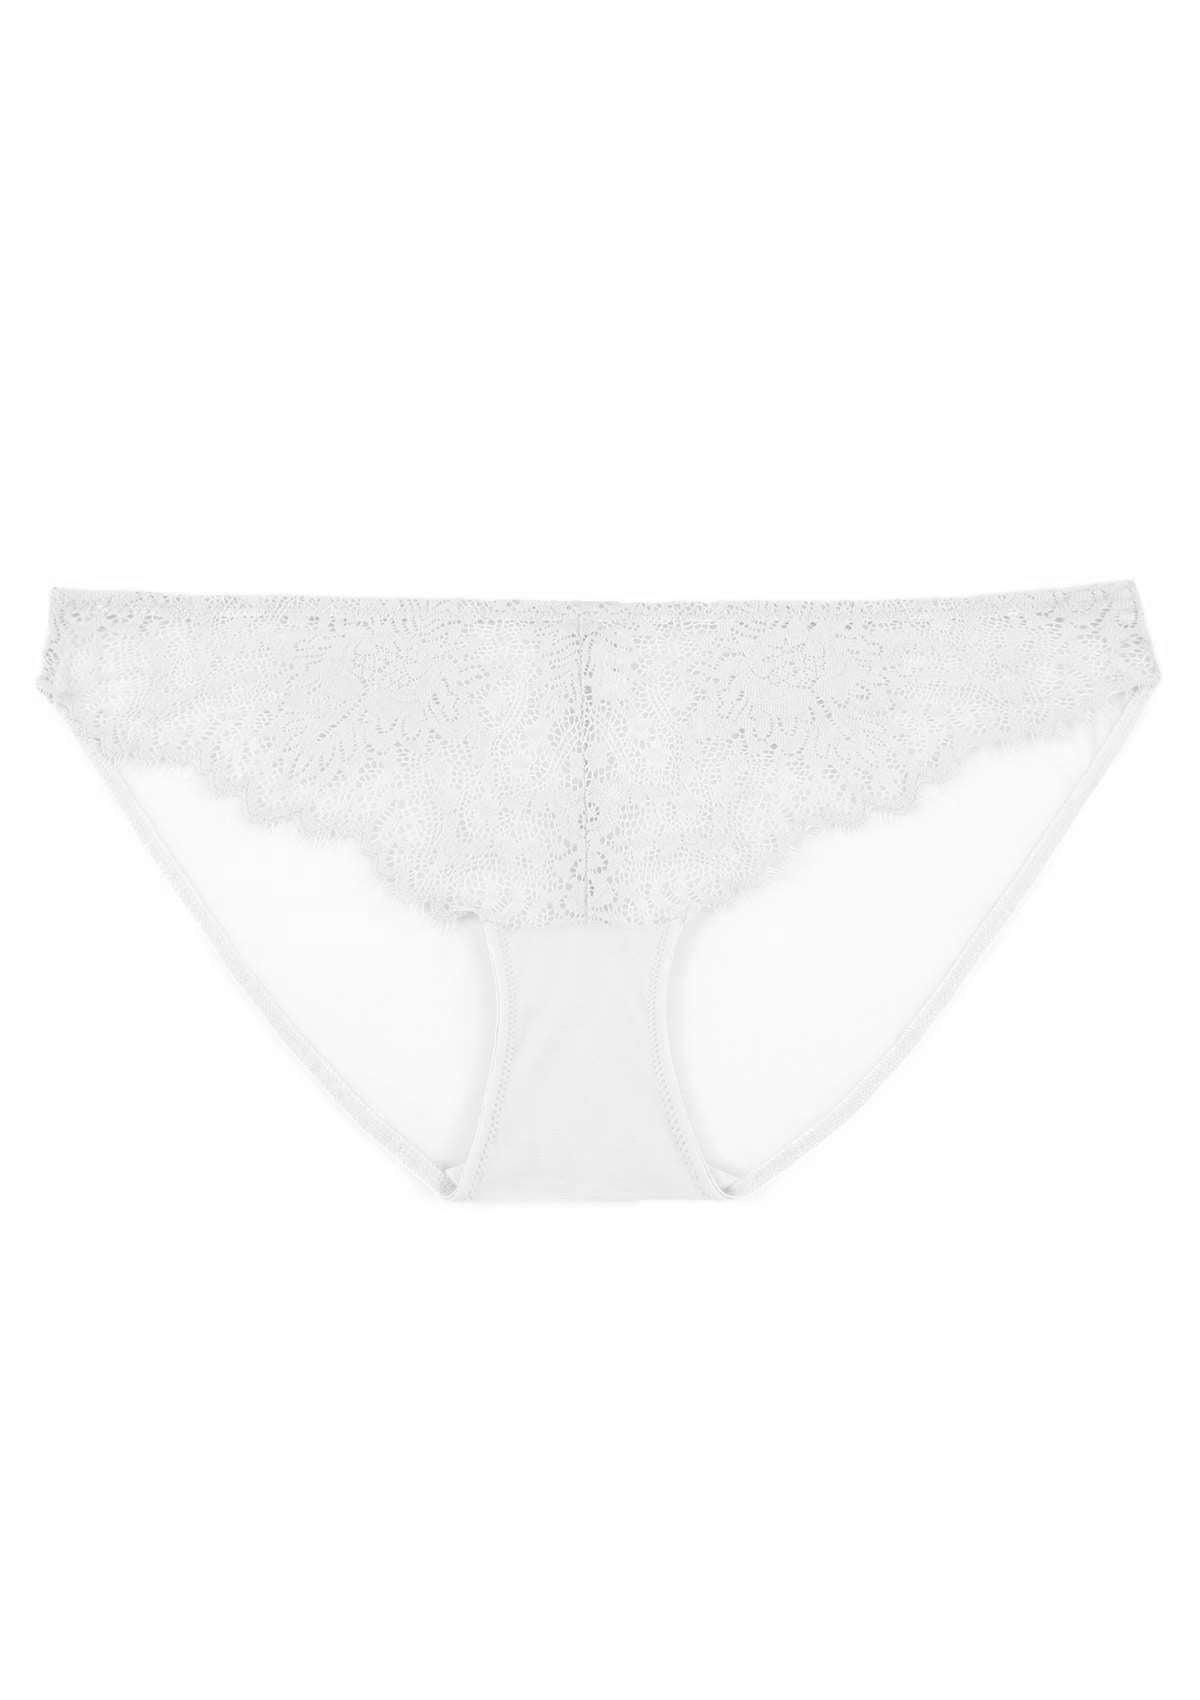 HSIA Sunflower Exquisite White Lace Bikini Underwear - L / Bikini / White